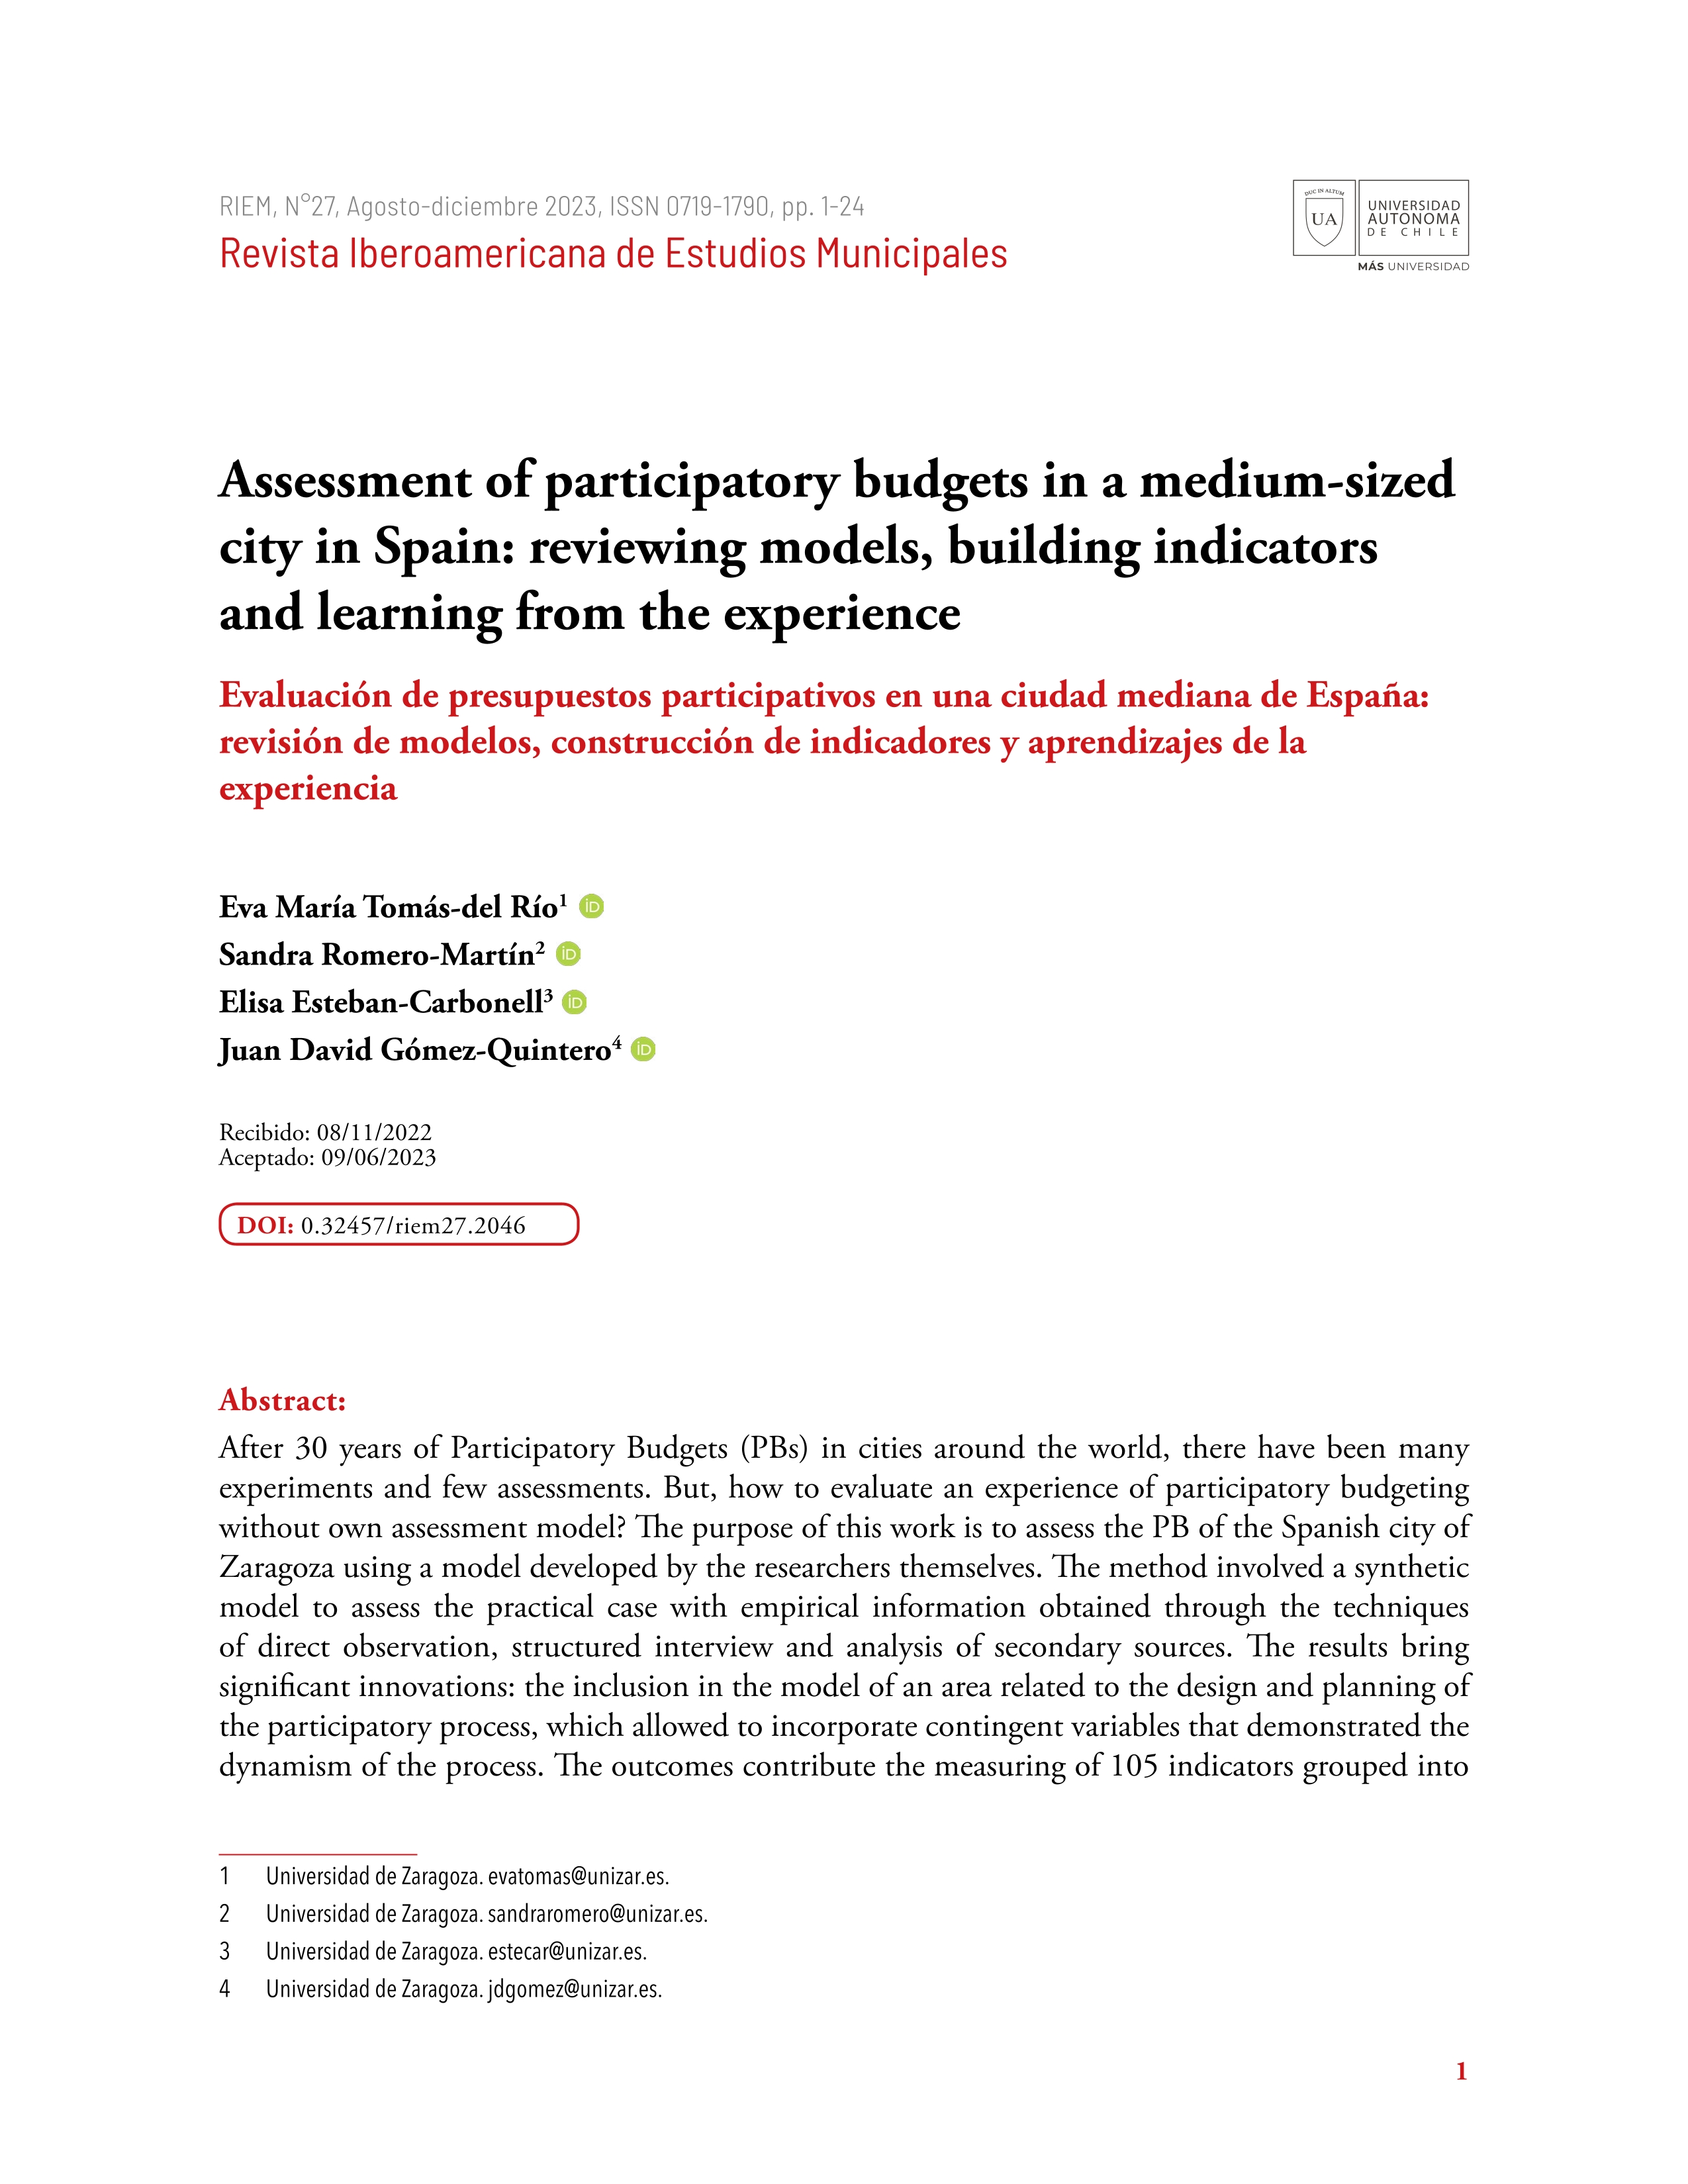 Evaluación de presupuestos participativos en una ciudad mediana de España: revisión de modelos, construcción de indicadores y aprendizajes de la experiencia